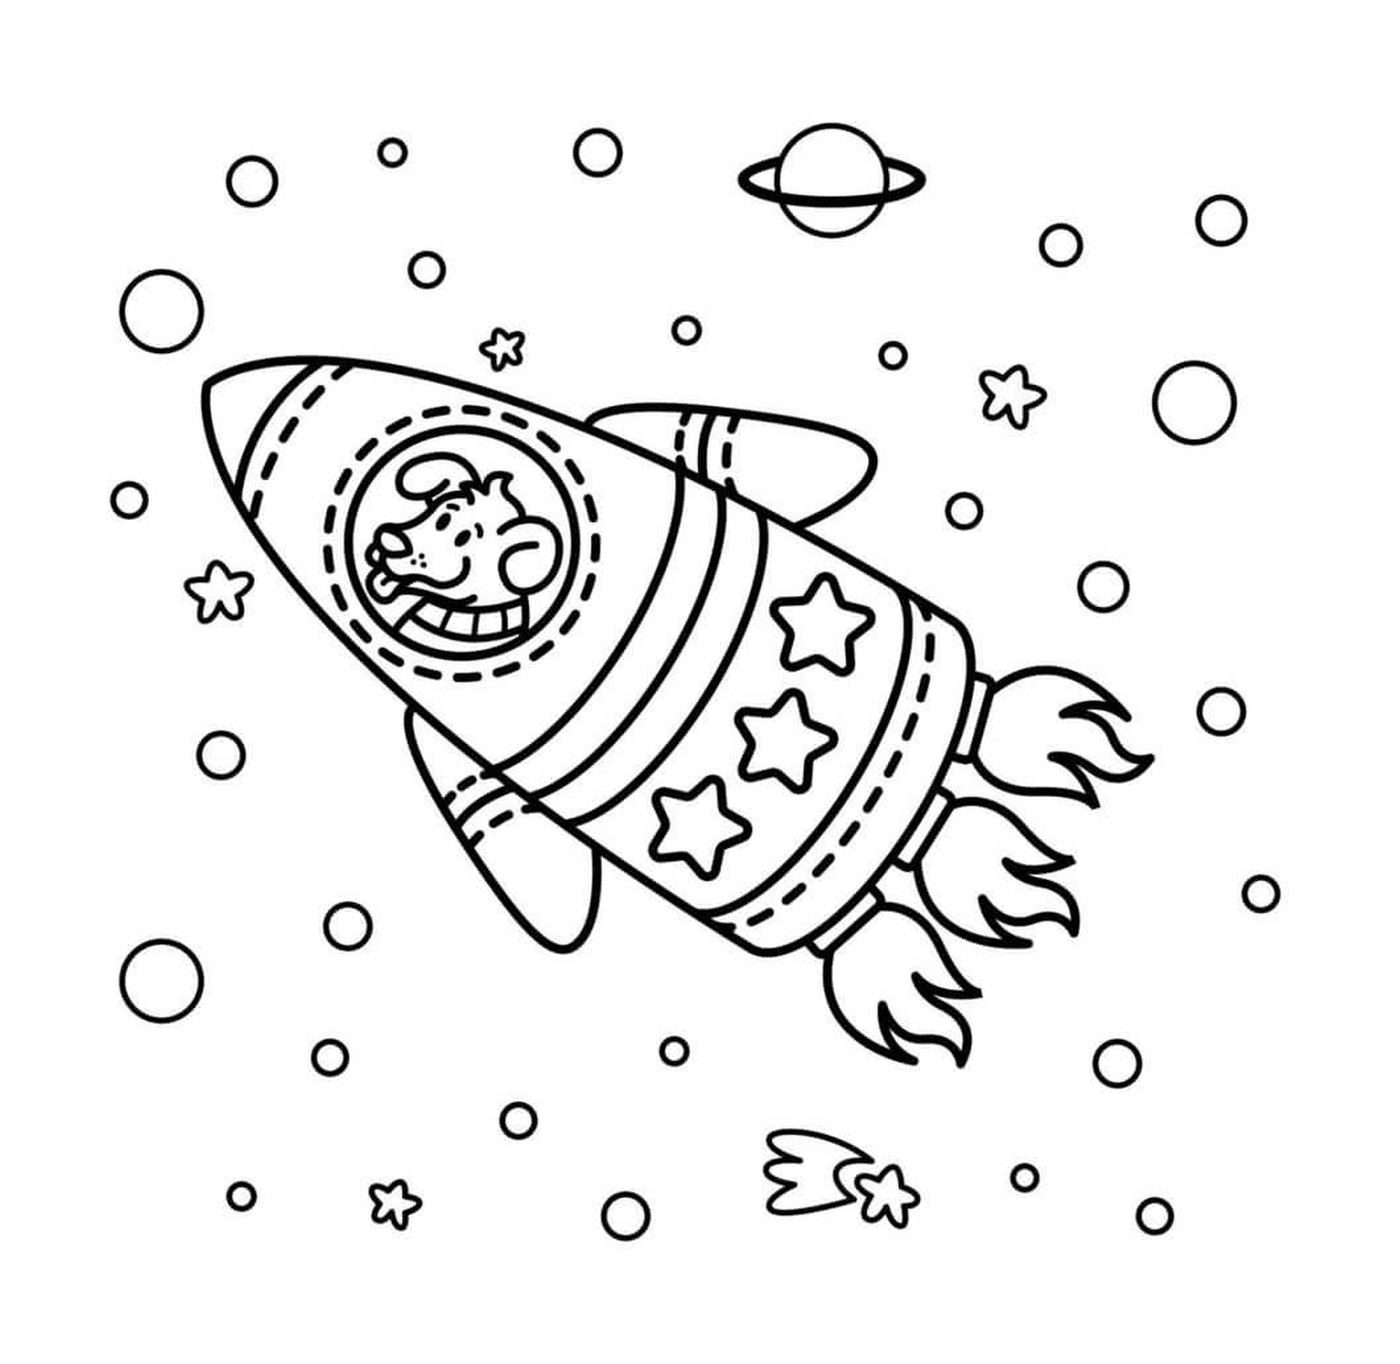  Foguete espacial com cão 